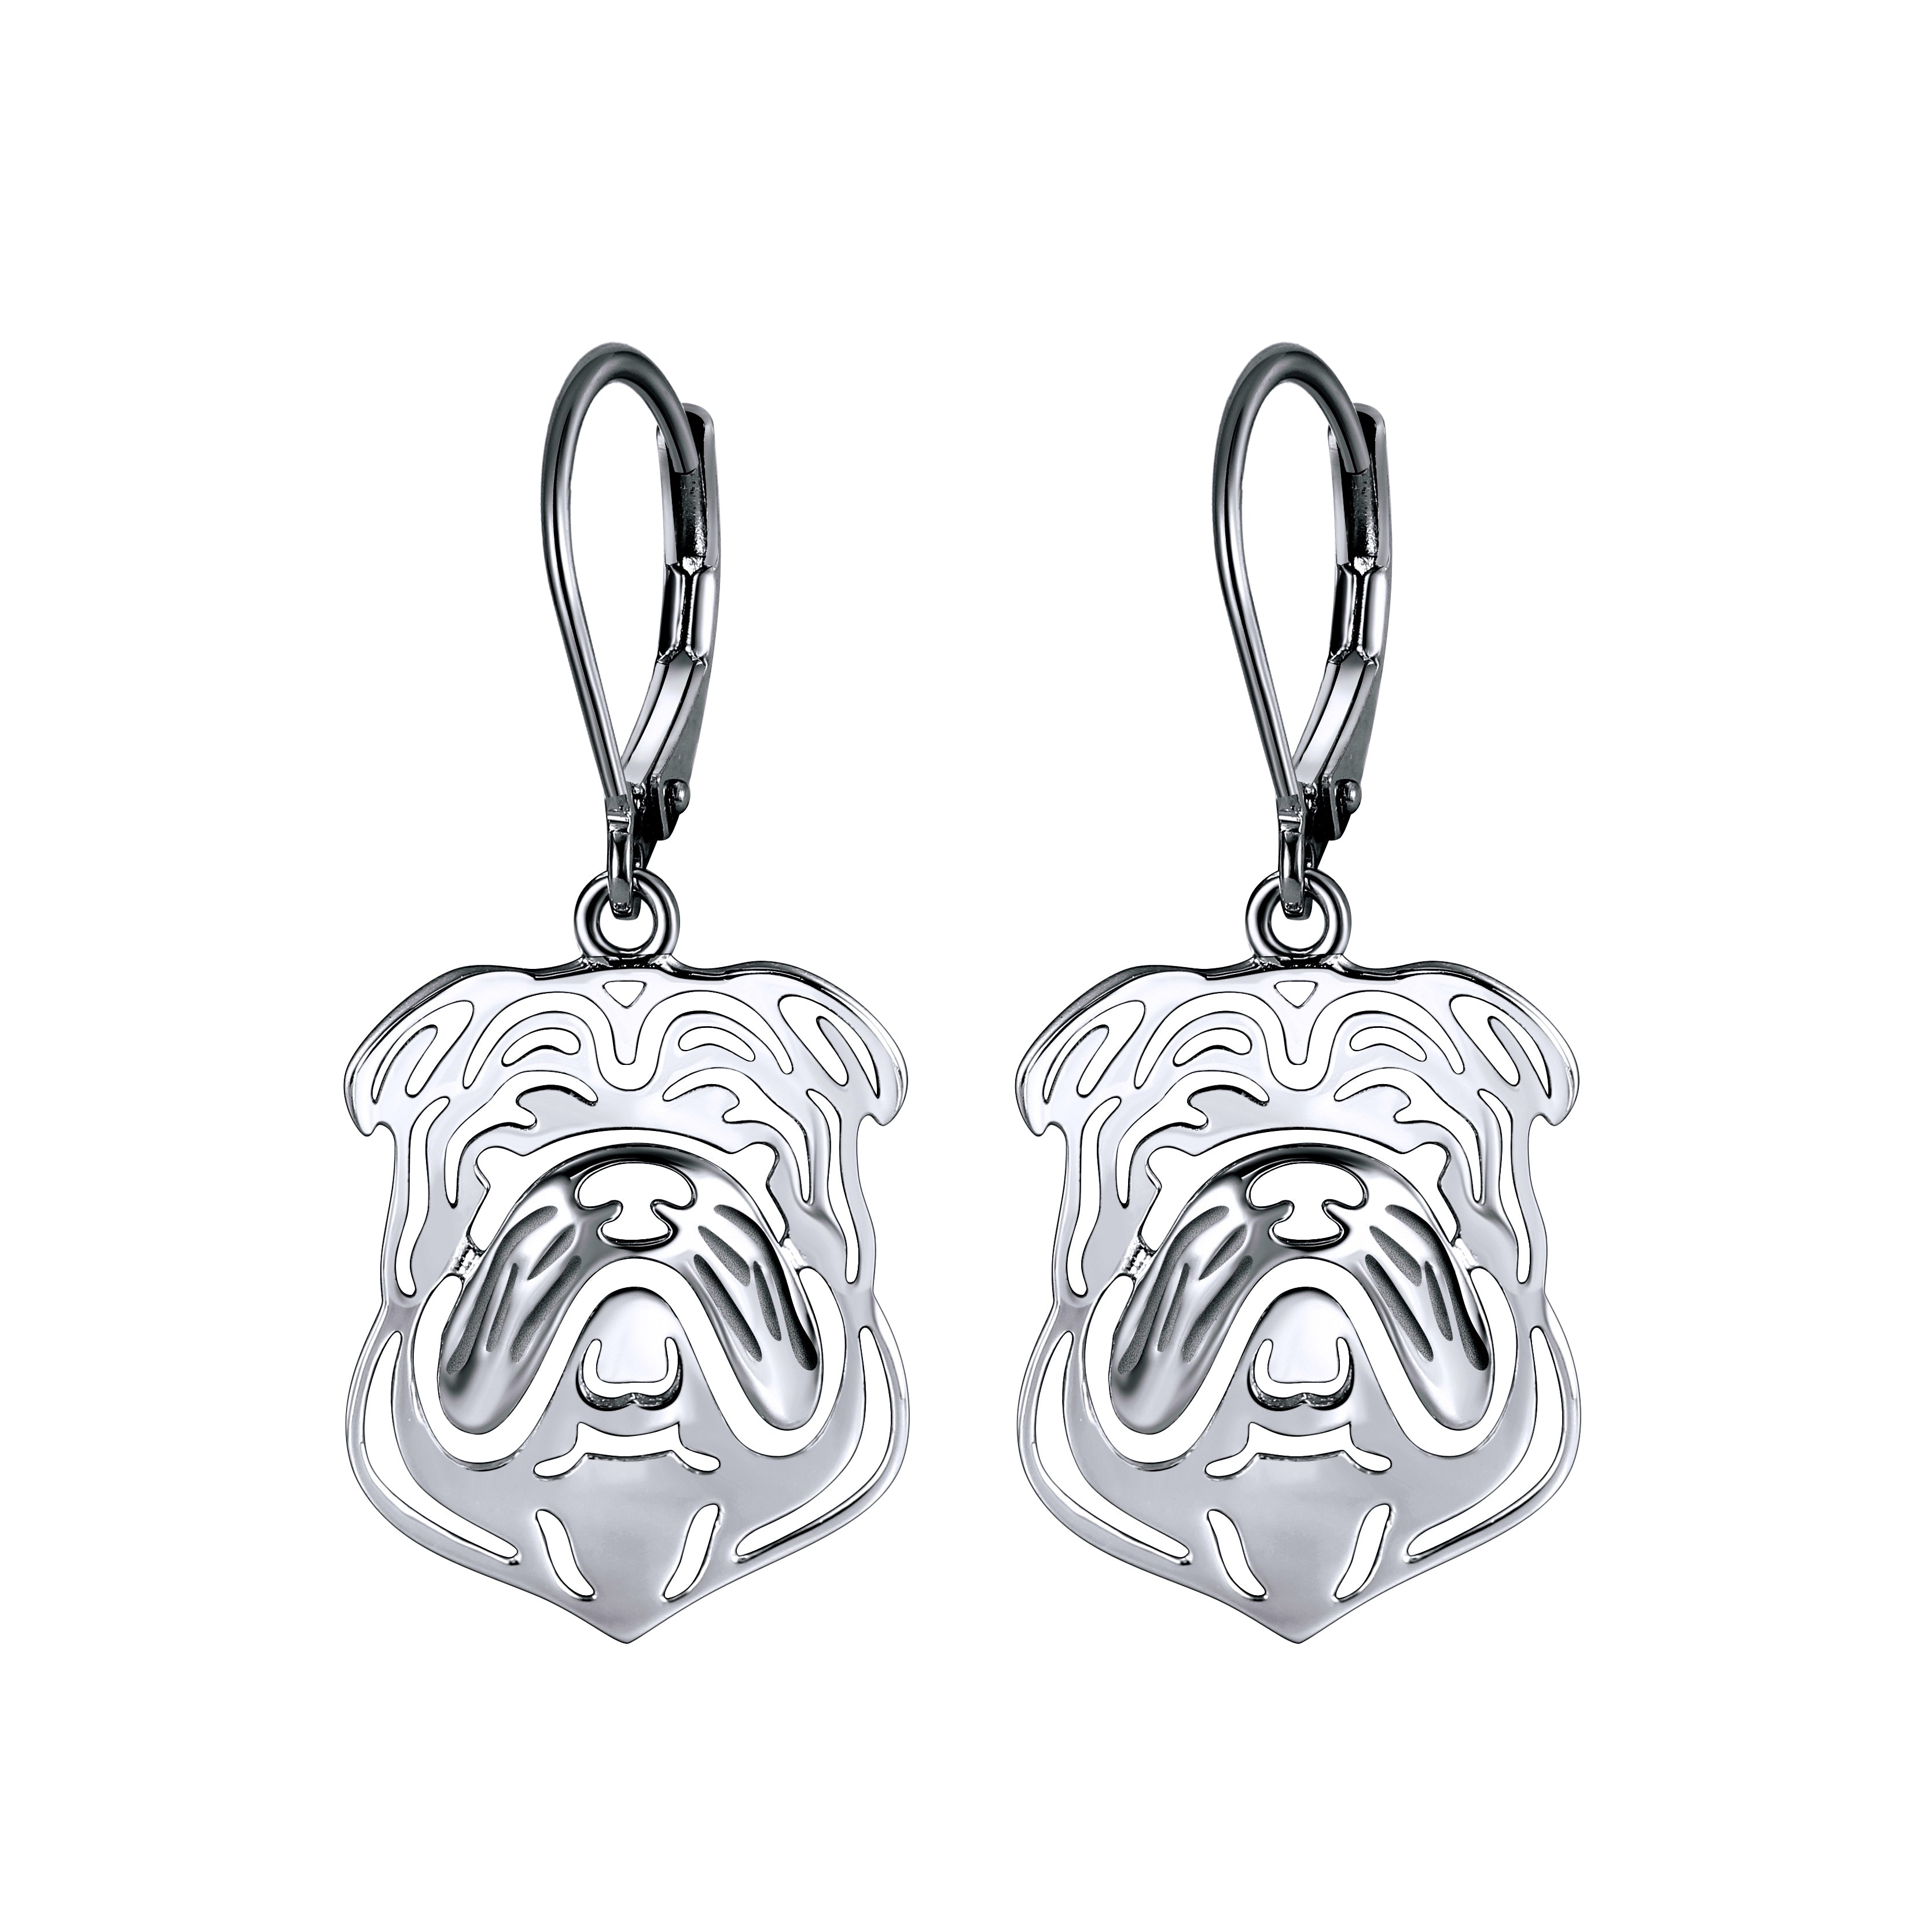 Bulldog Sterling Silver Dangle Earrings Womens Ginger Lyne Collection - Earrings